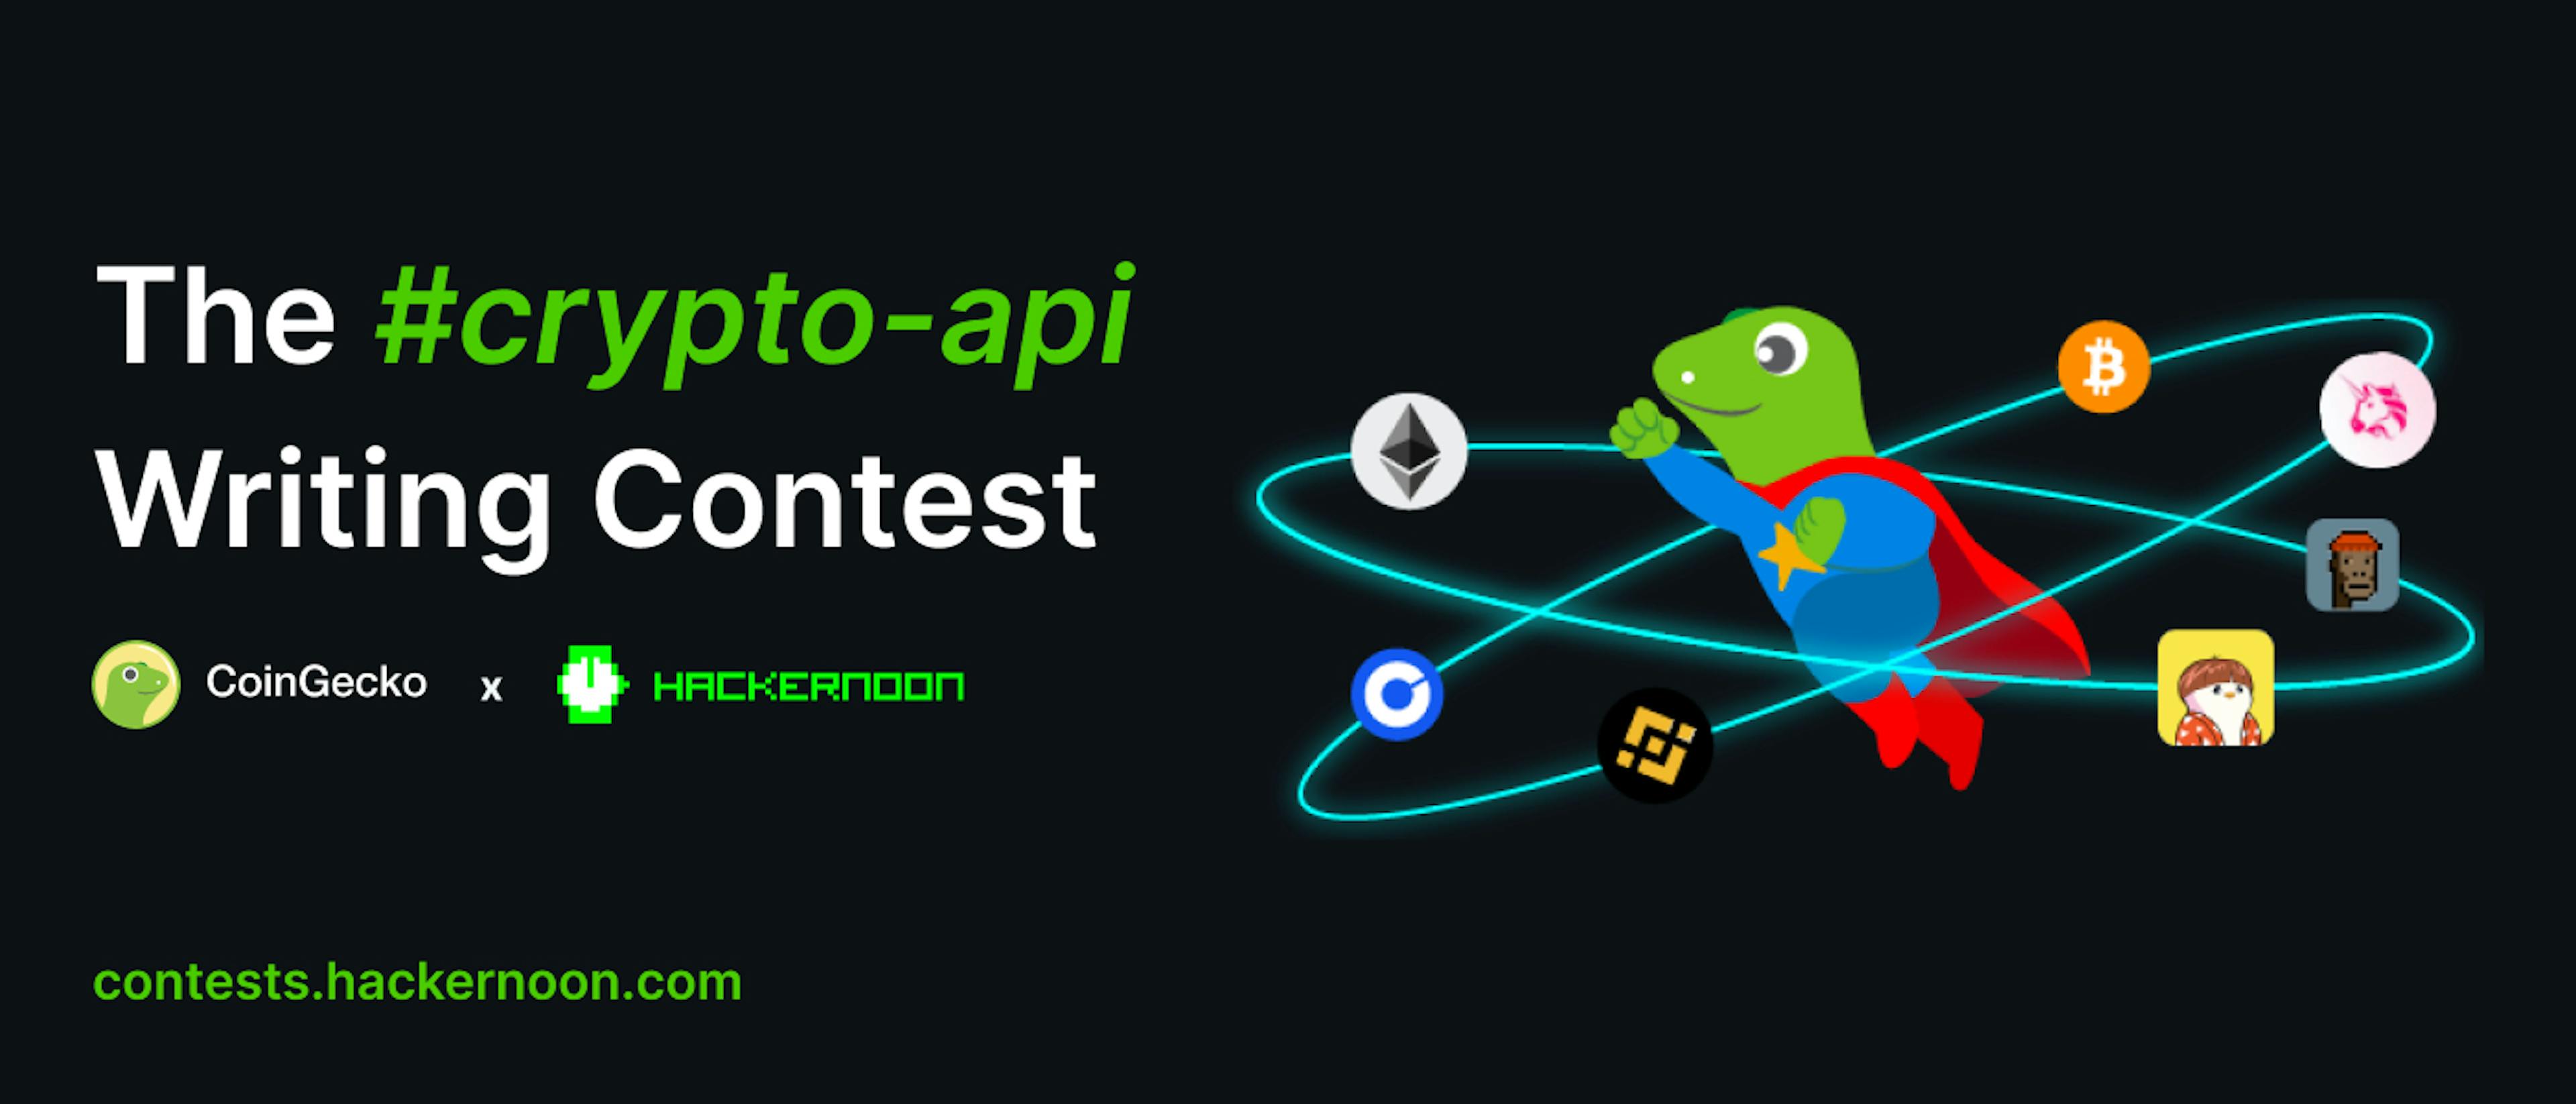 featured image - CoinGecko 和 HackerNoon 举办的 #crypto-api 写作比赛